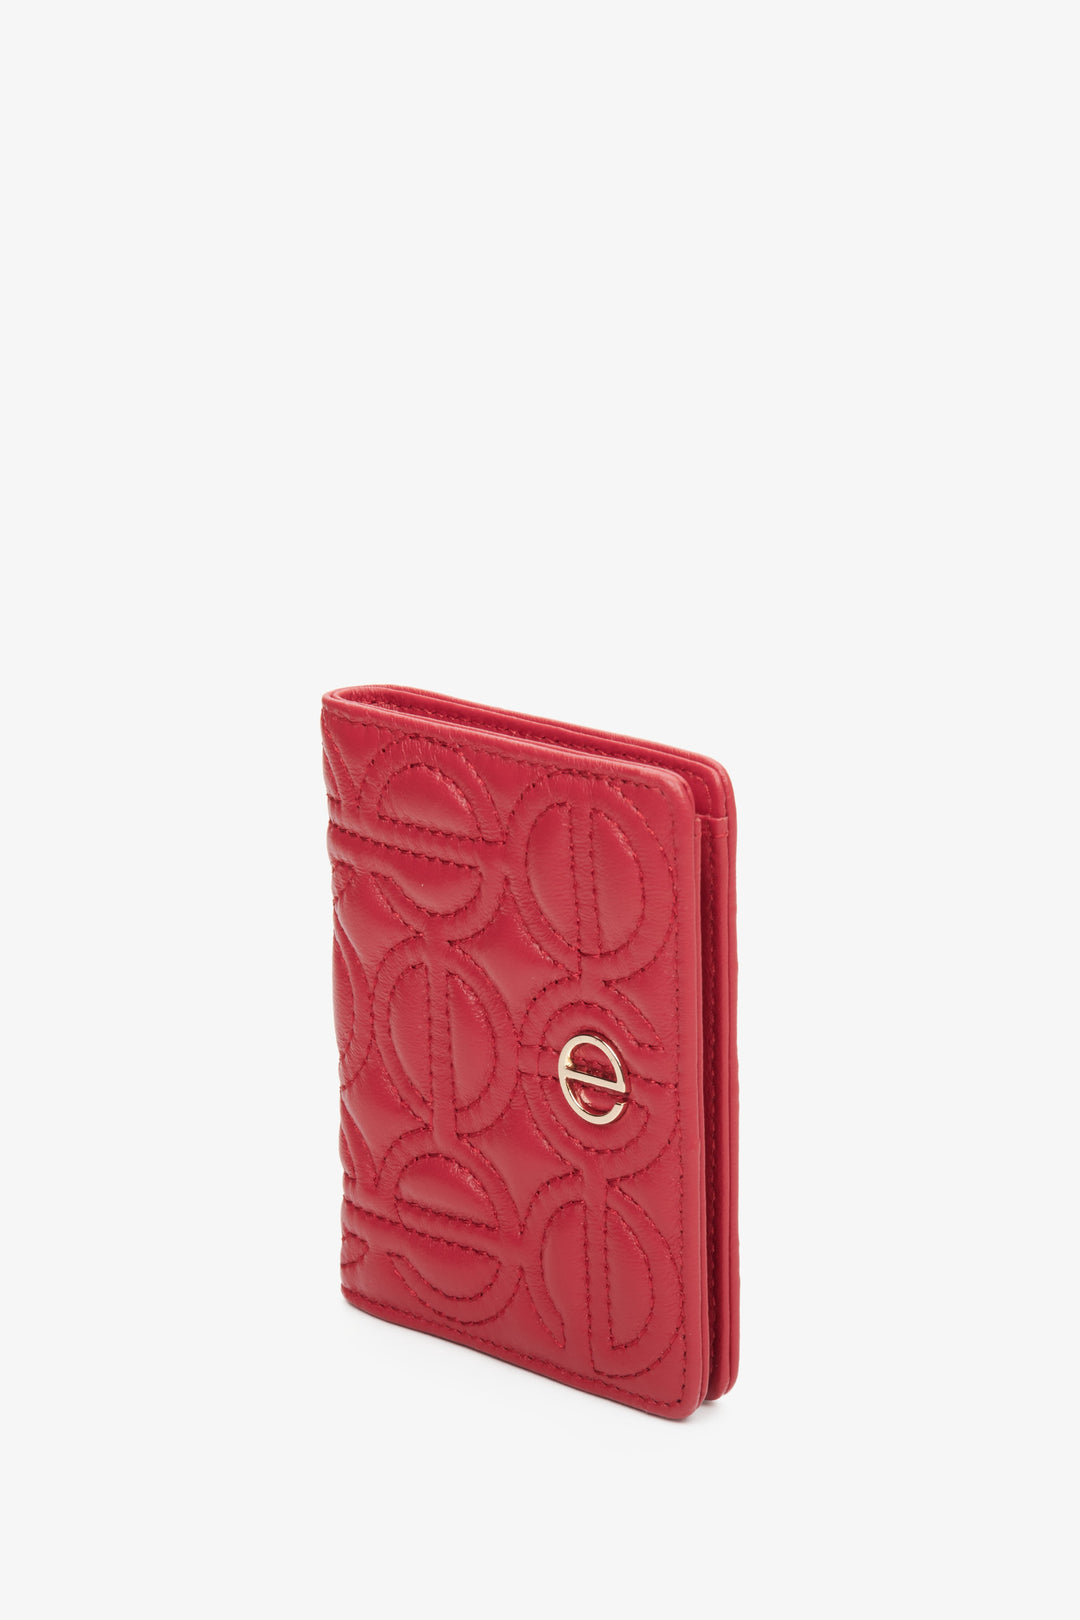 Skórzany, mały portfel damski w kolorze czerwonym ze złotymi okuciami marki Estro.